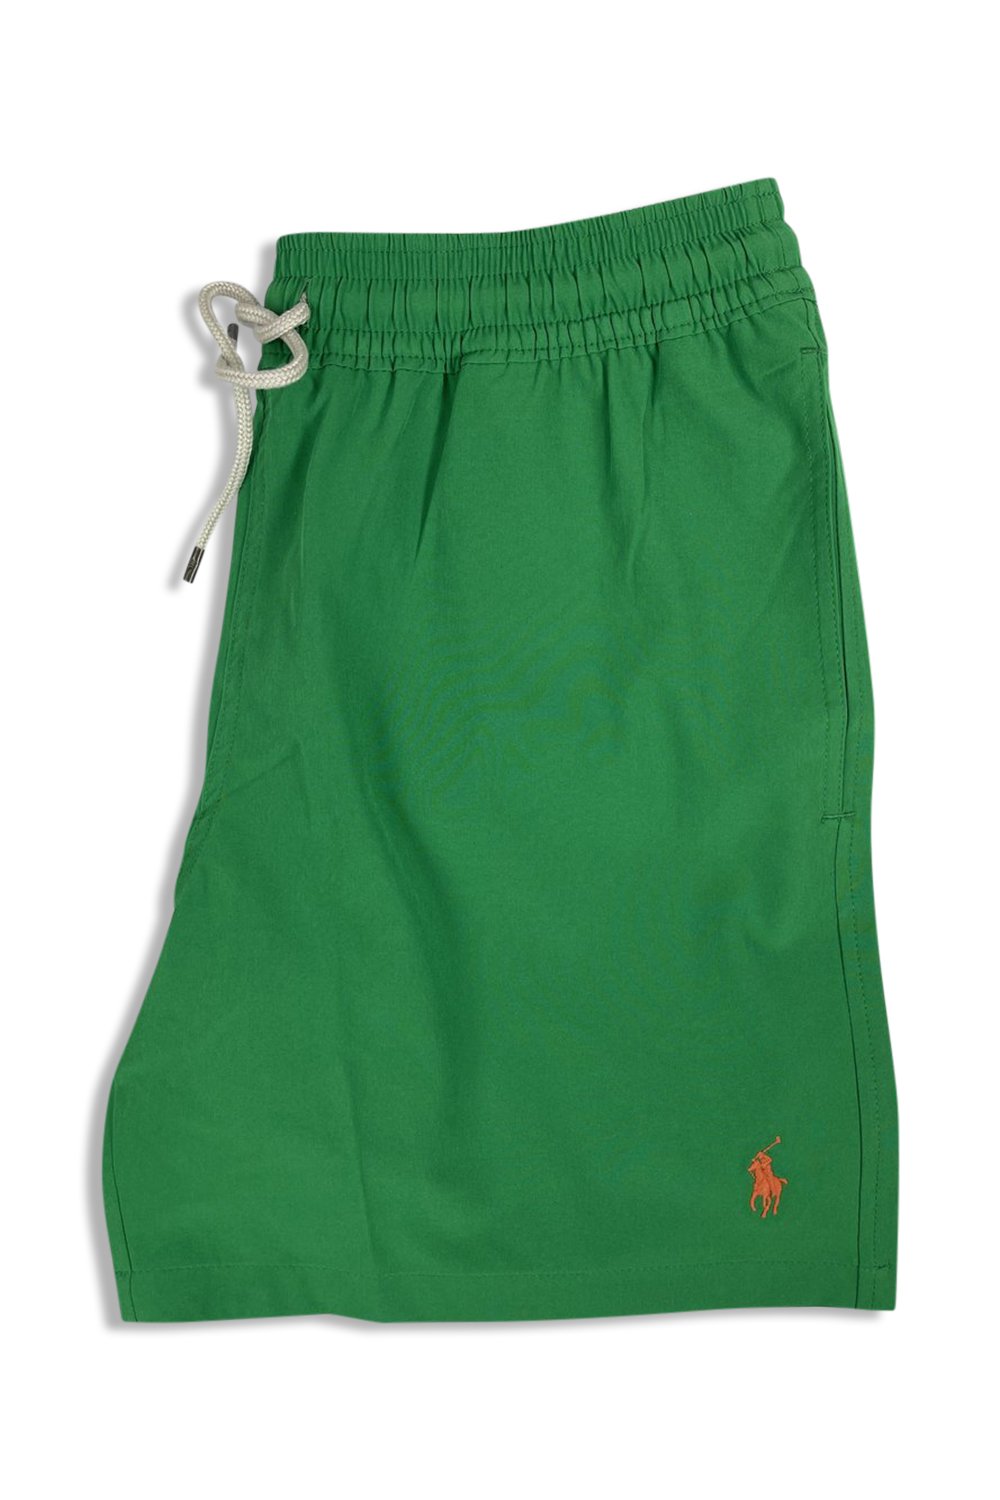 Men's Green Polo Ralph Lauren Traveller Slim Fit Swim Shorts